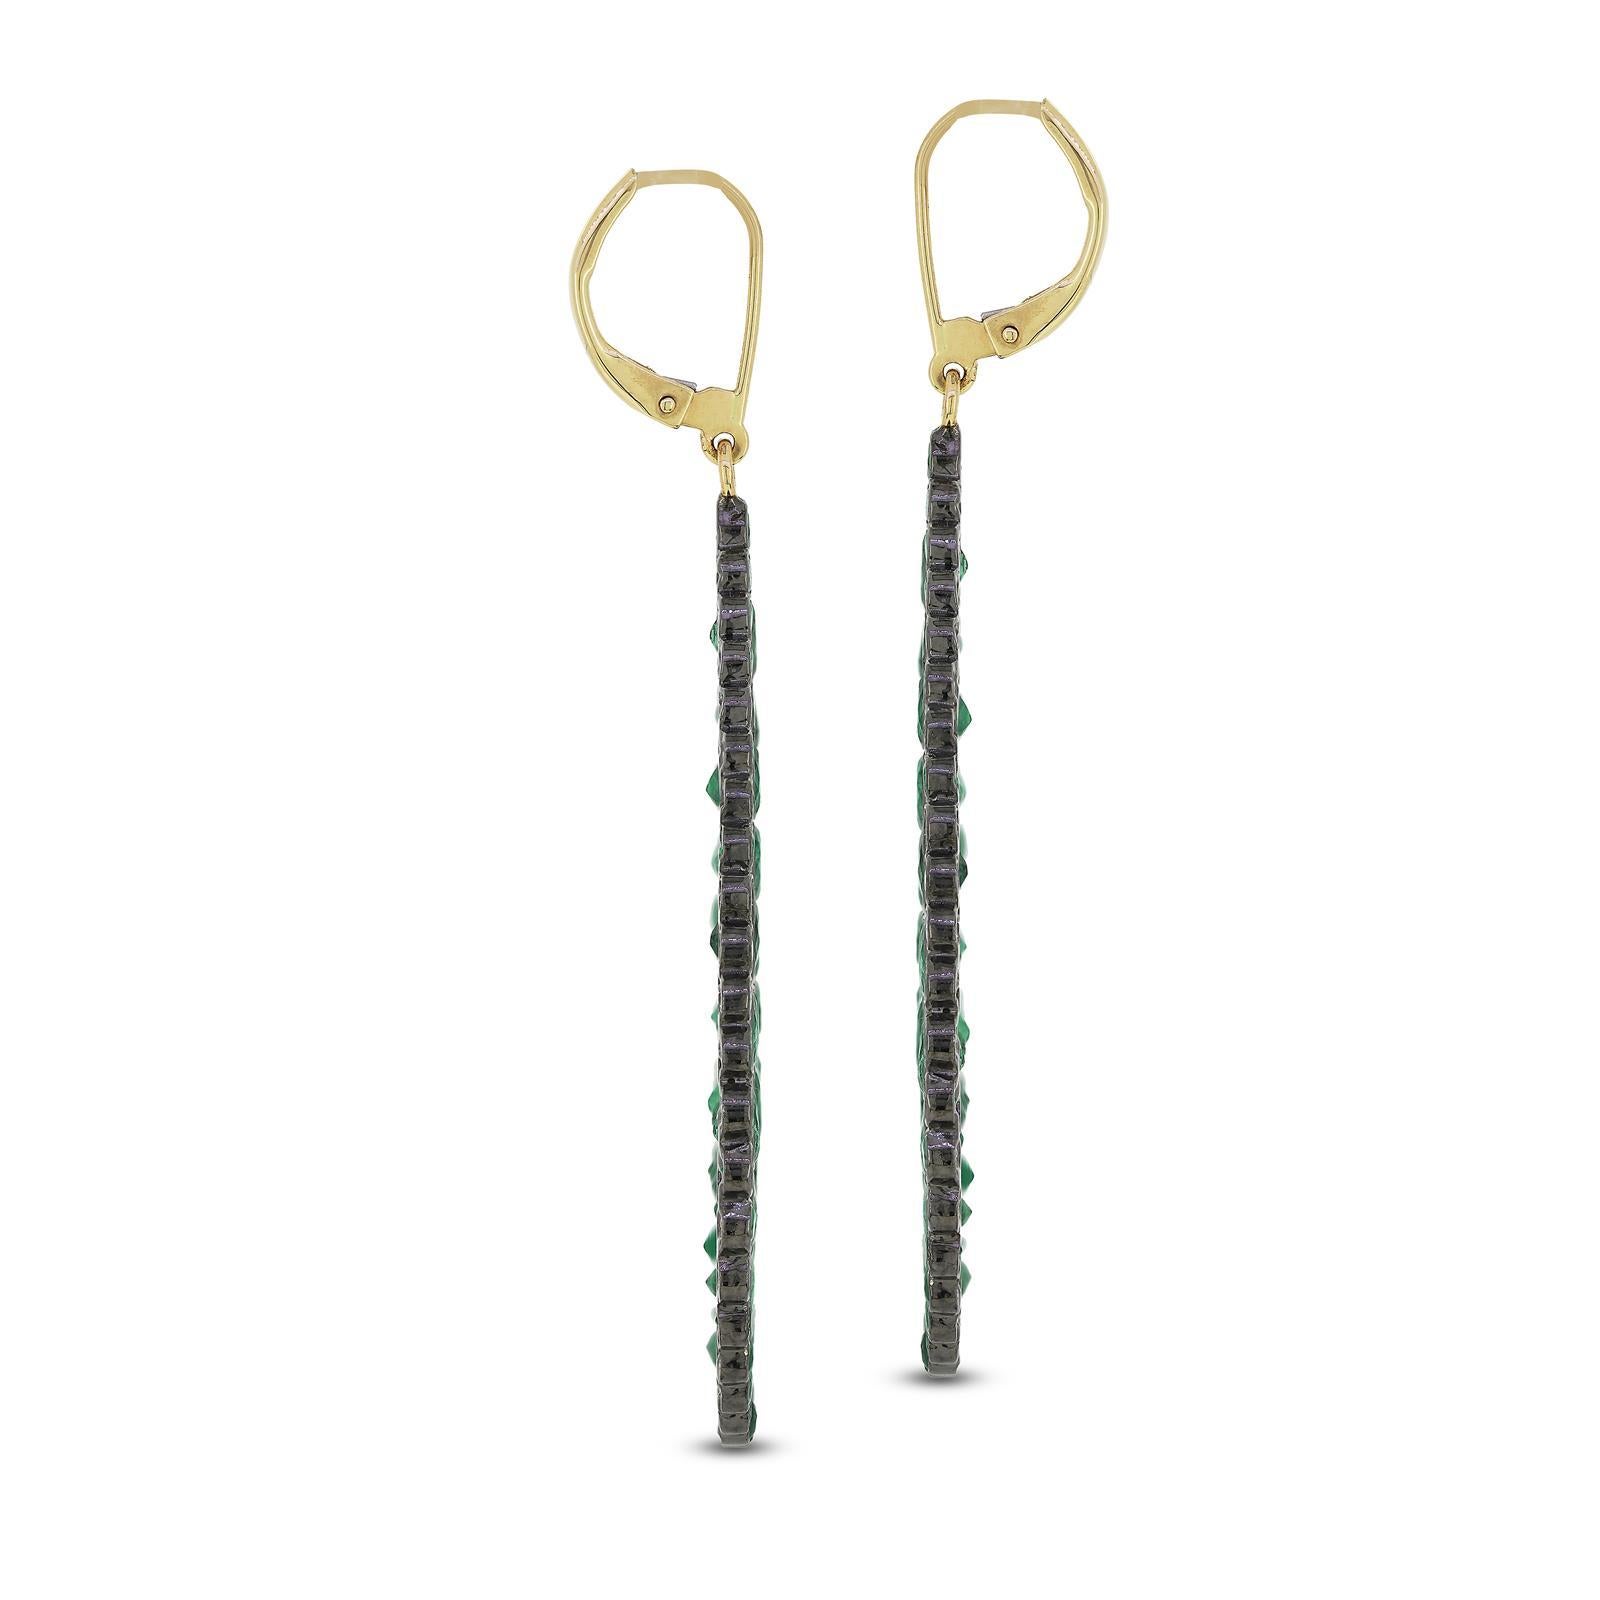 Oval Cut Gemistry 16cts Emerald Victorian Pear Drop Earrings in 18k/14k Sterling Silver For Sale